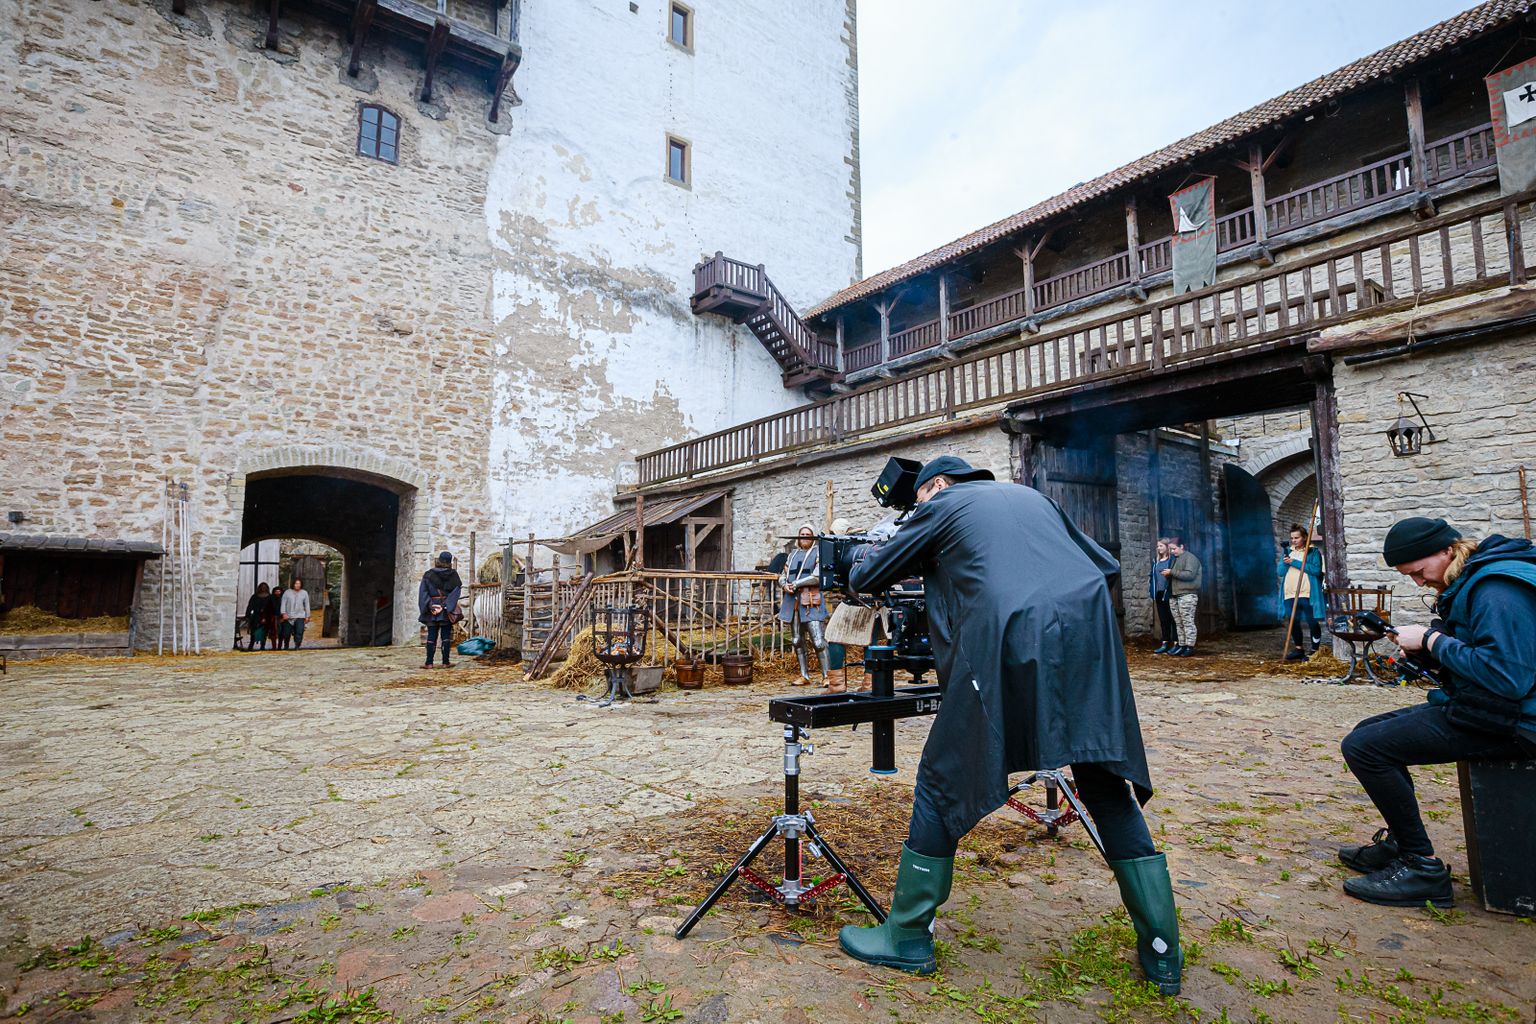 Съемки фильма Эльмо Нюганена "Аптекарь Мельхиор" проходили также в Нарвской крепости.